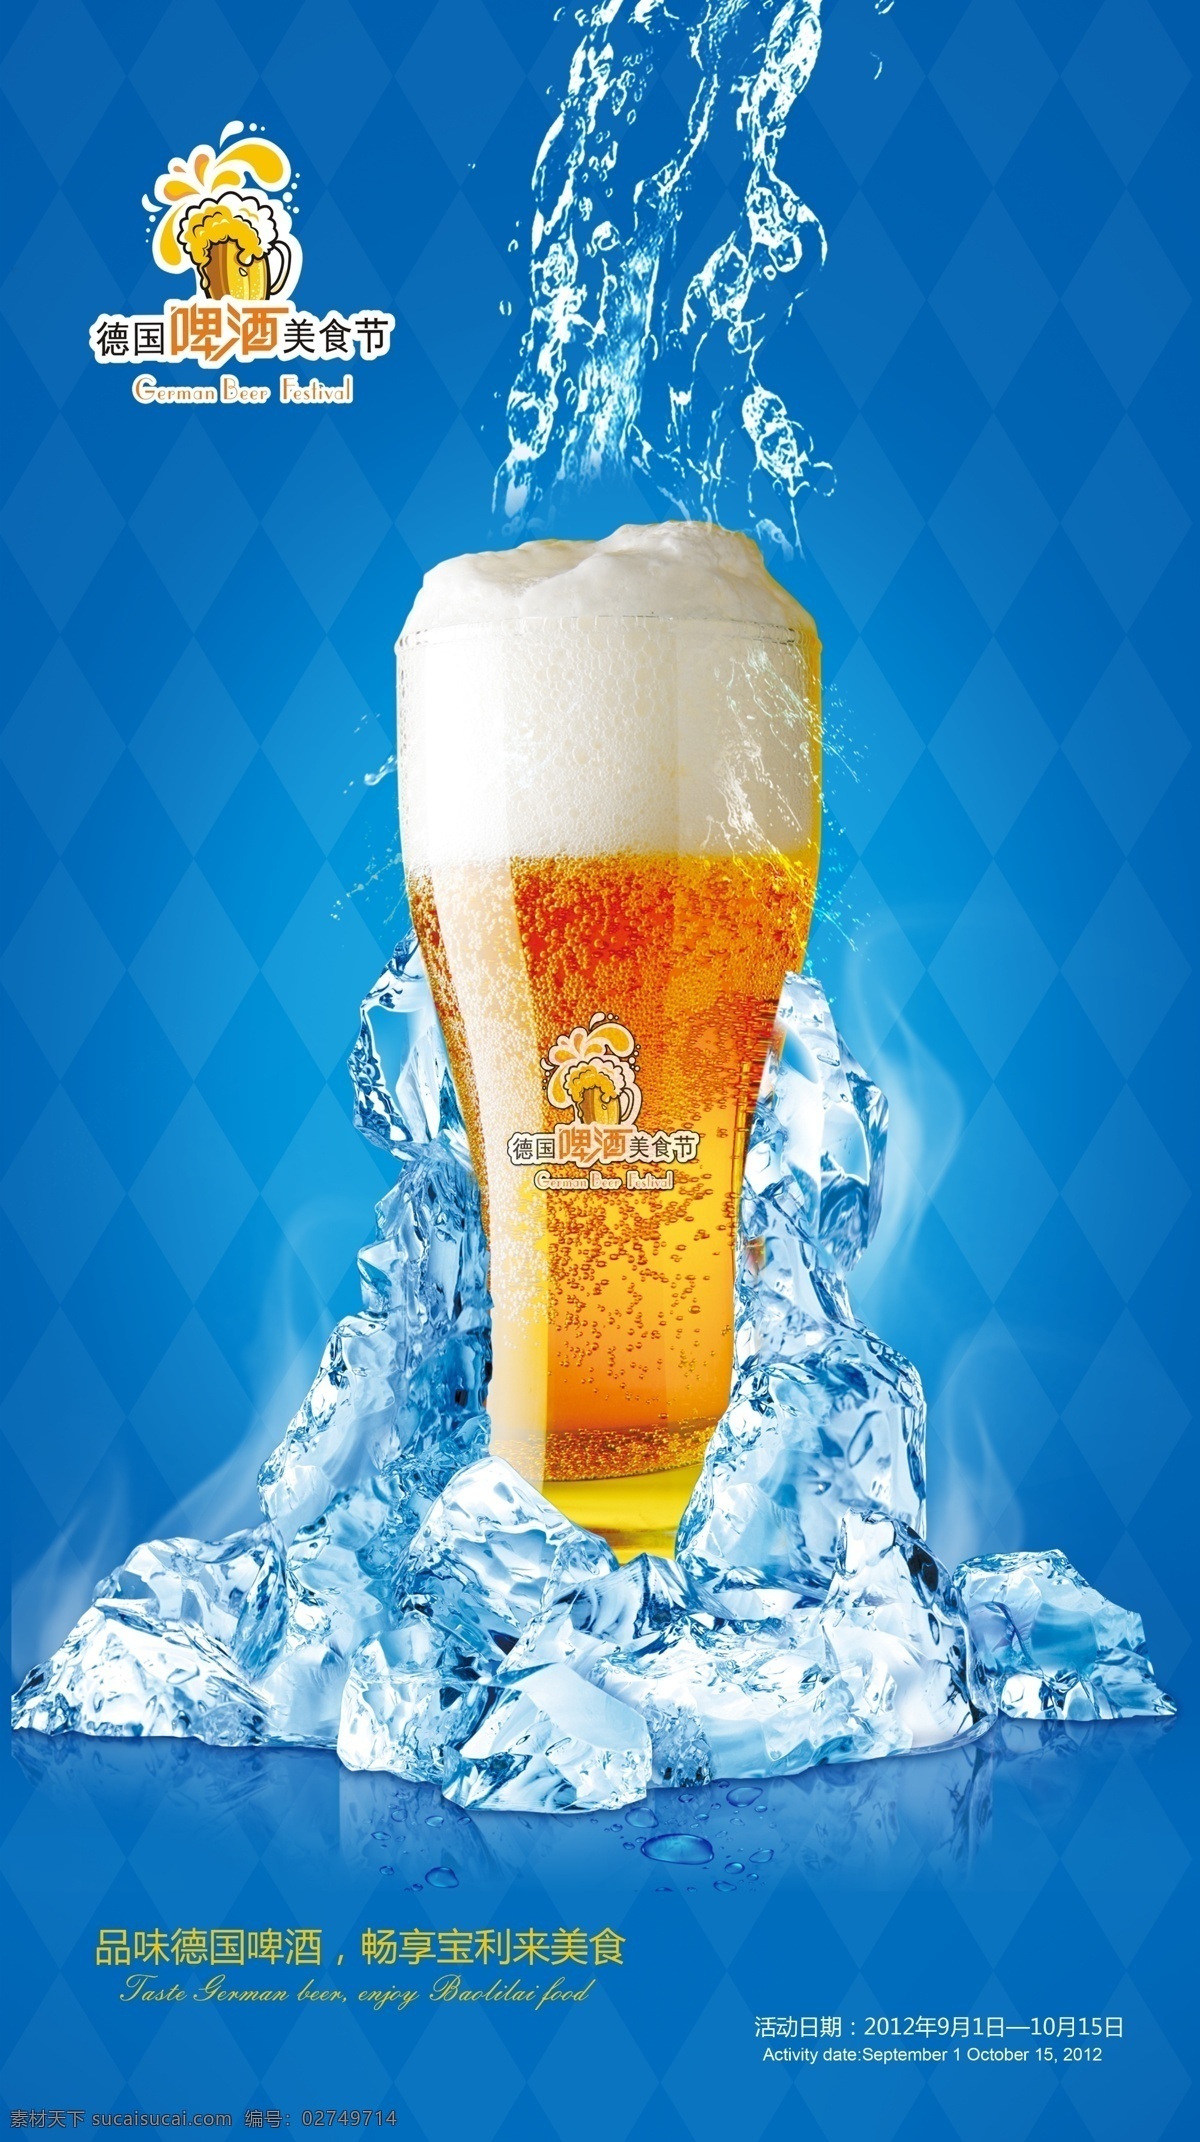 德国 啤酒节 德国国旗 广告设计模板 酒店 啤酒 源文件 德国啤酒节 冰 水 慕尼黑啤酒 其他海报设计